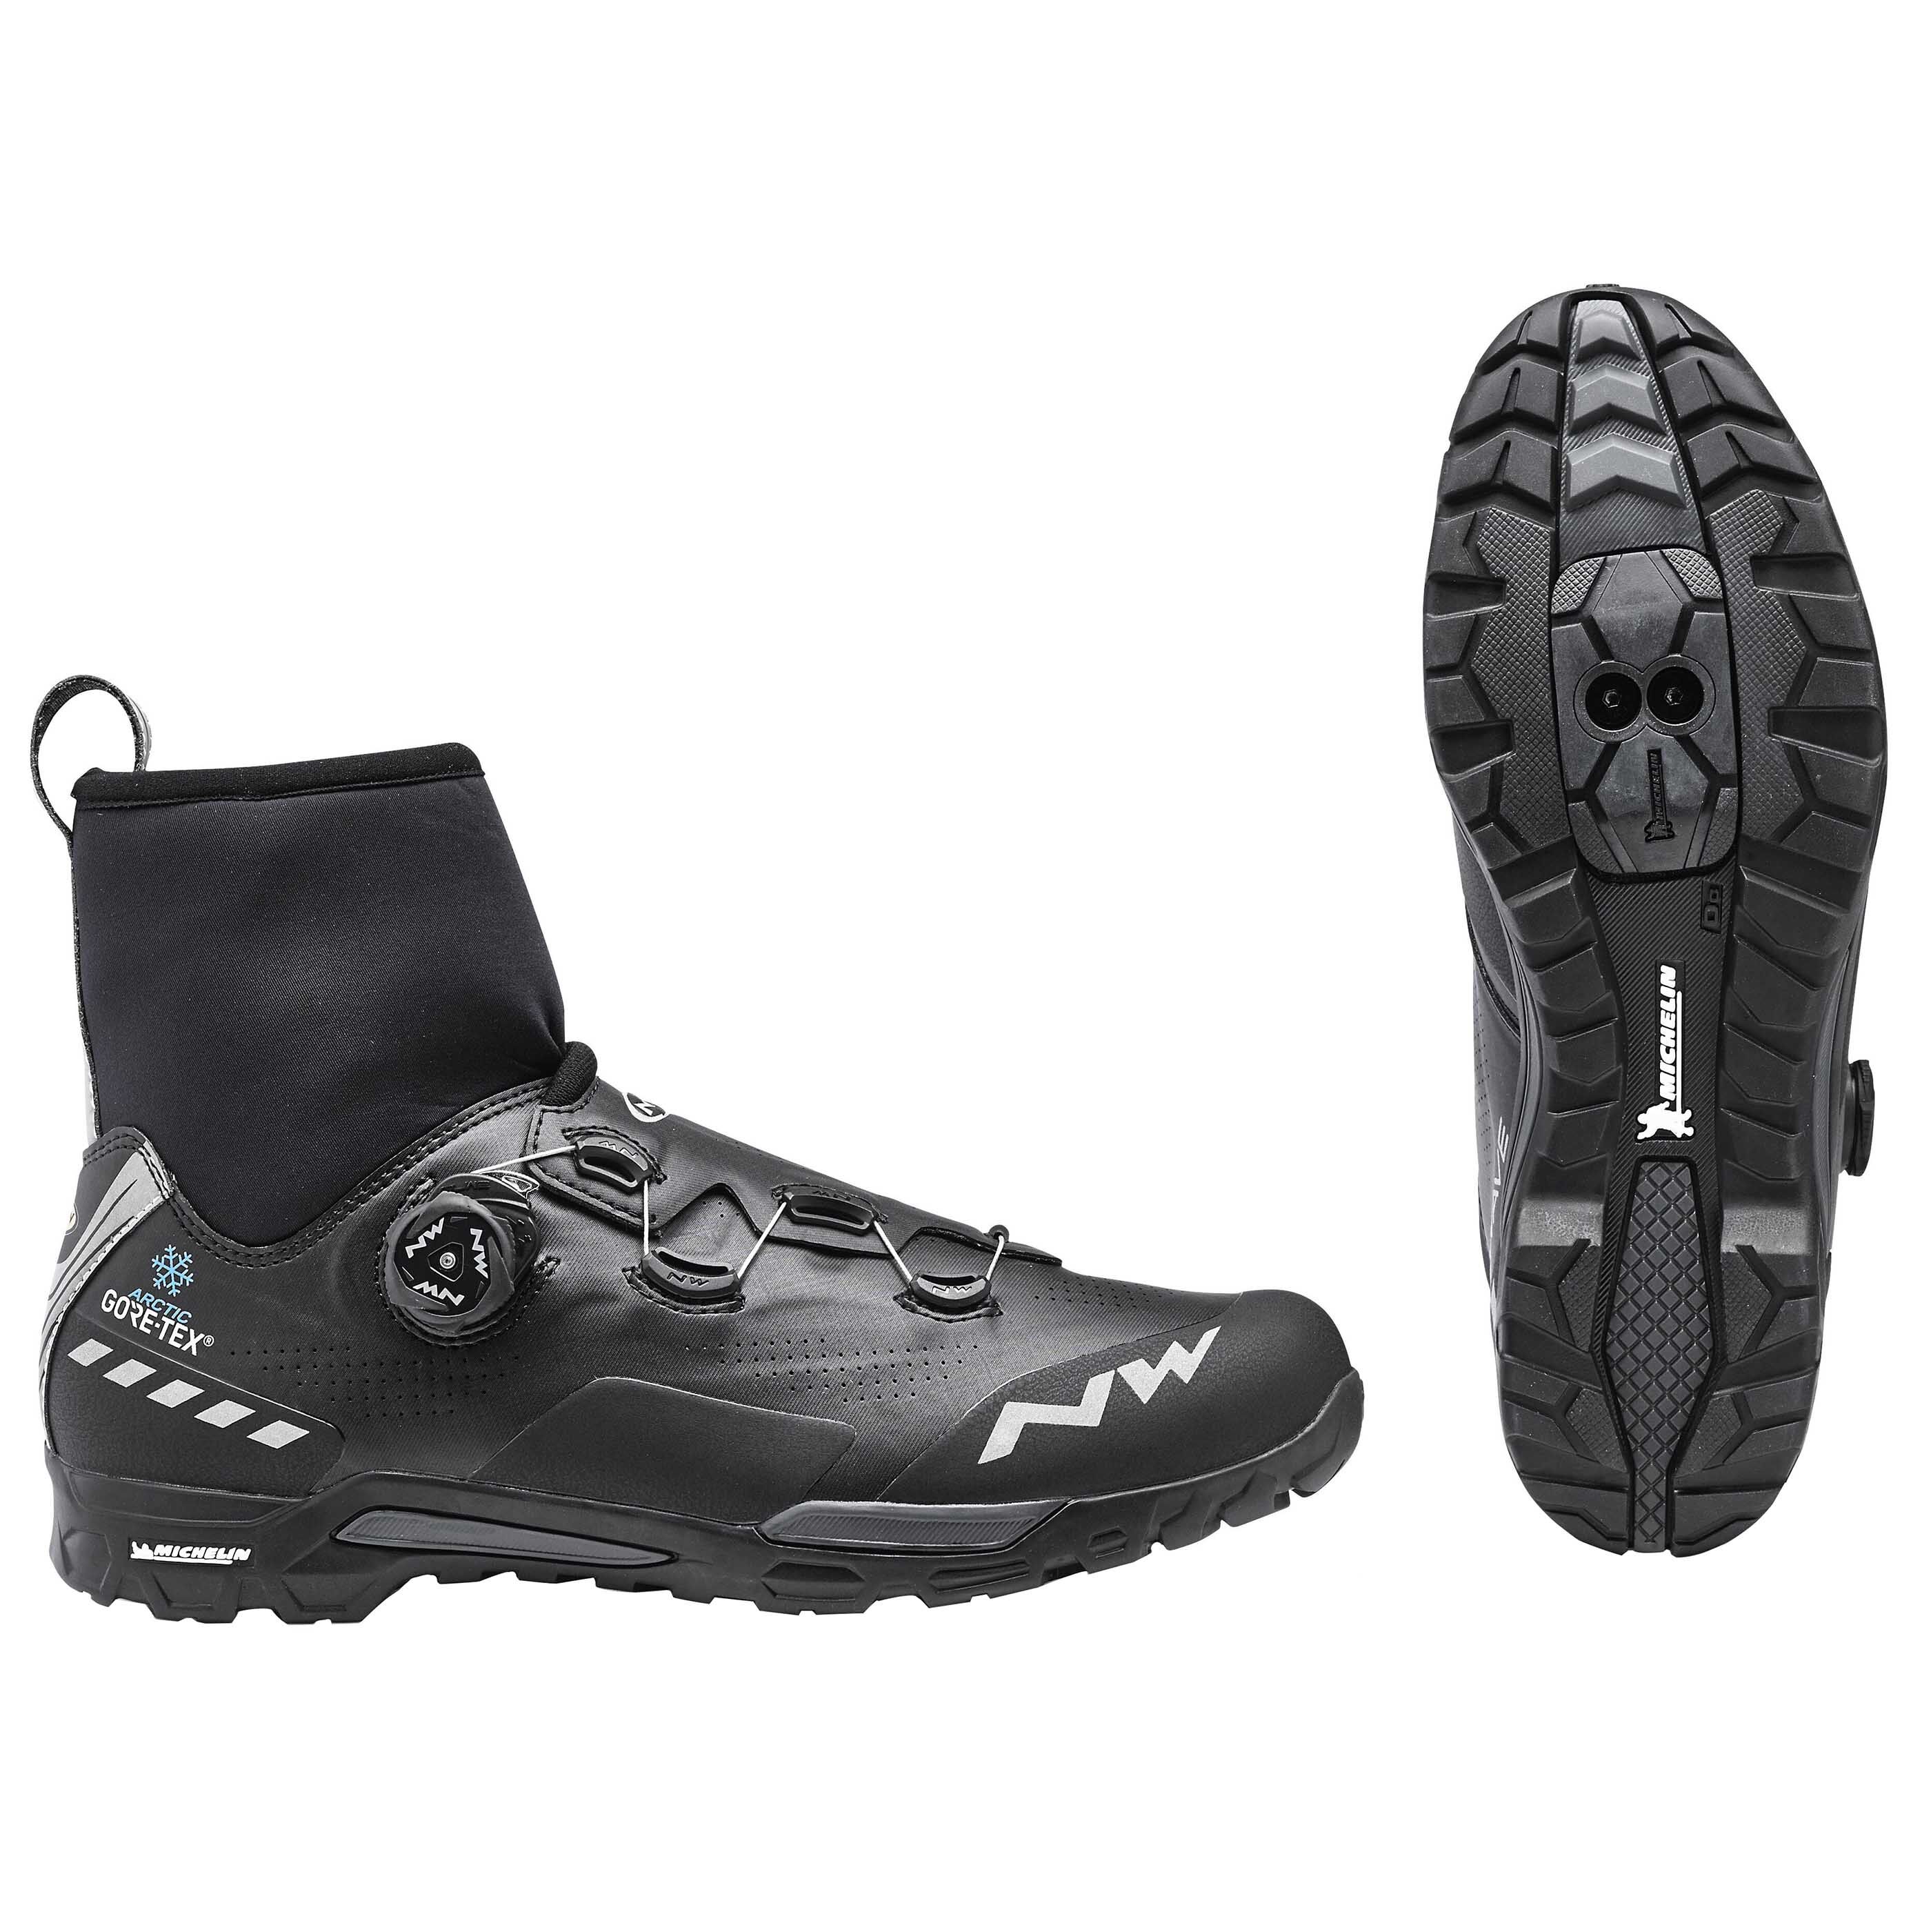 Northwave X-Raptor Arctic GTX - Mountain Bike shoes - Men's